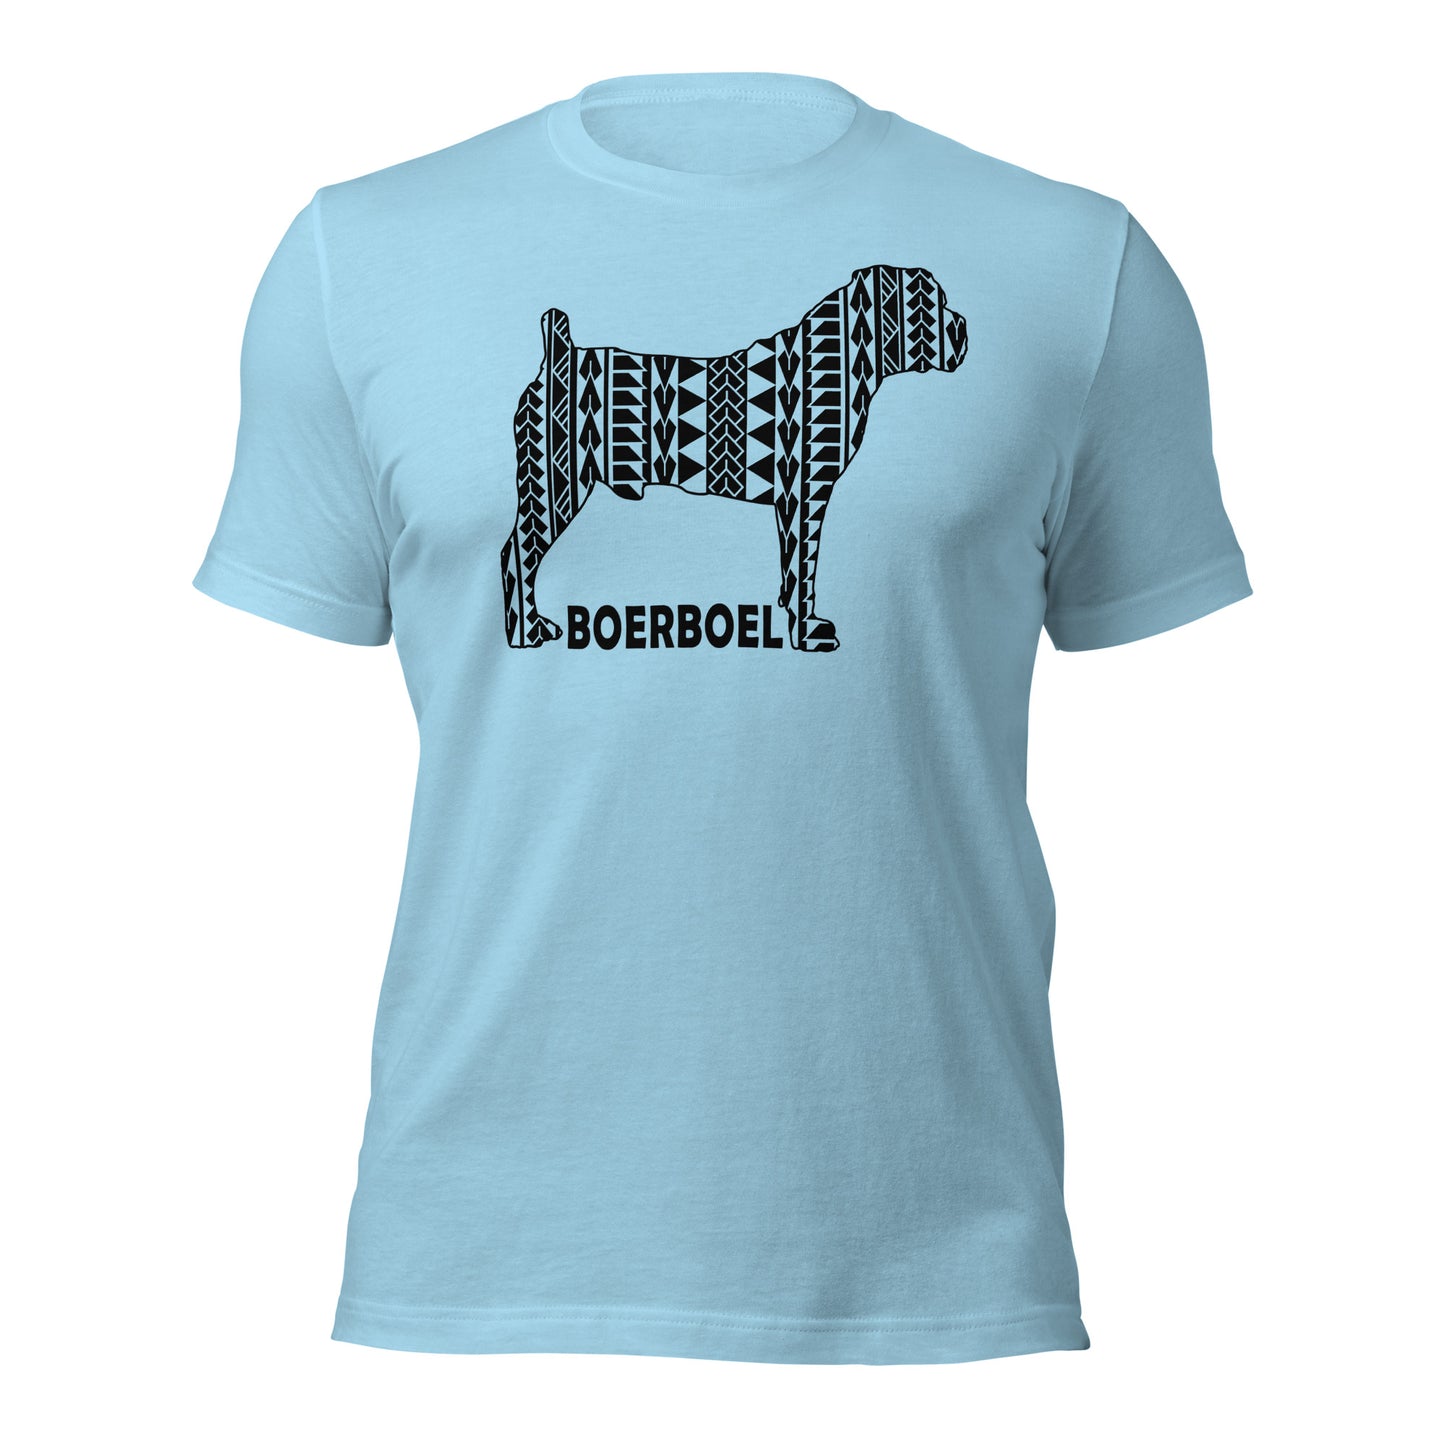 Boerboel Polynesian t-shirt blue by Dog Artistry.